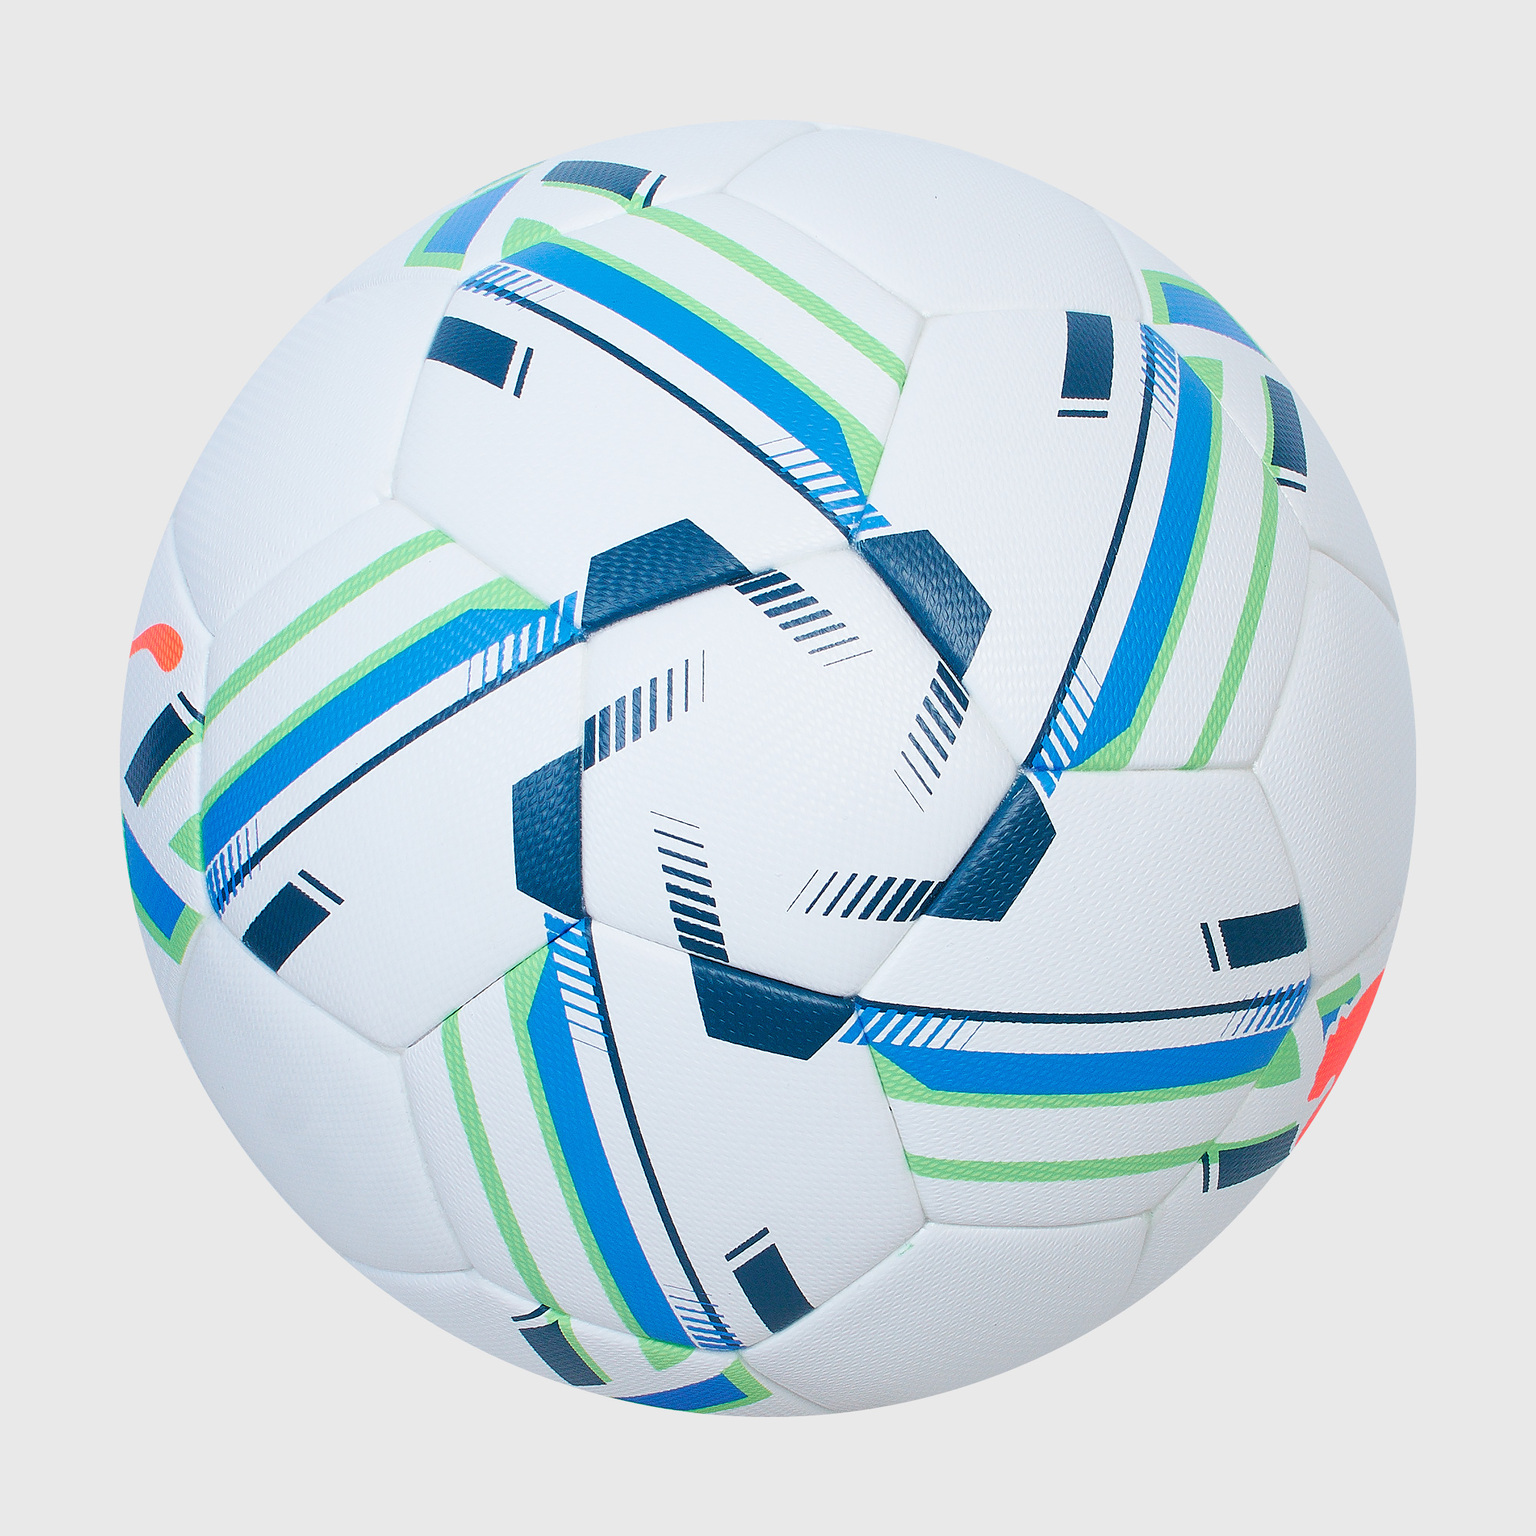 Футзальный мяч Puma Futsal 1 Fifa Quality Pro 08340801